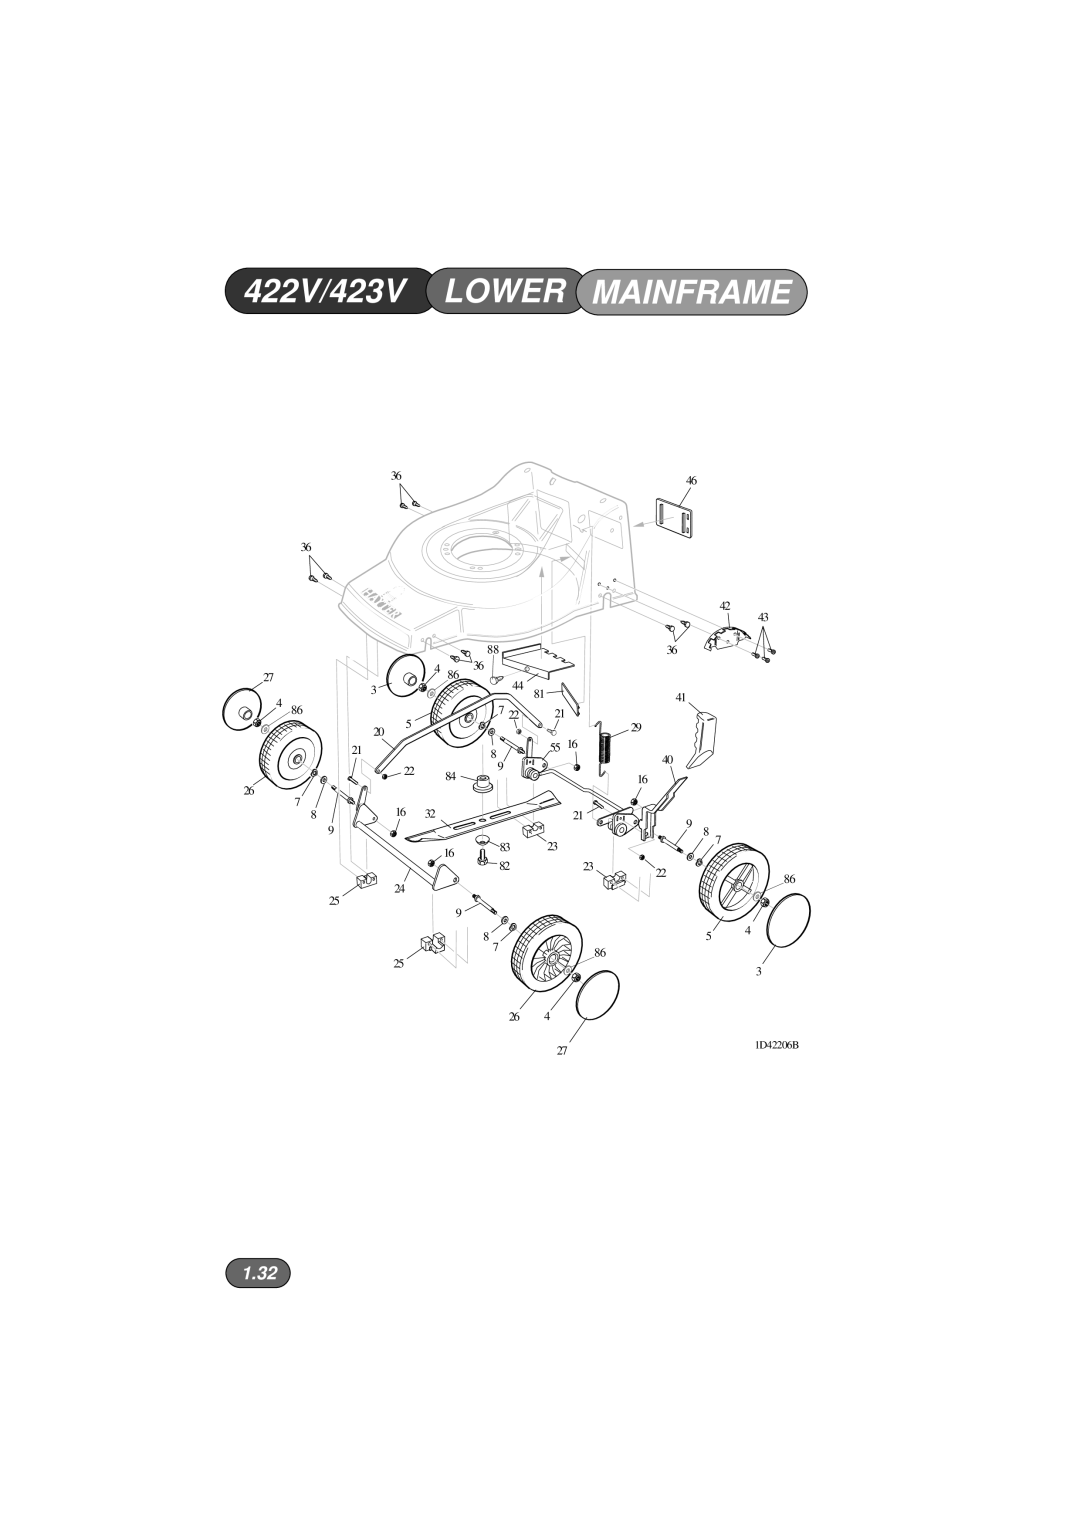 Hayter Mowers 424V manual 422V/423V LOWER MAINFRAME, 1.32, 1D42206B 